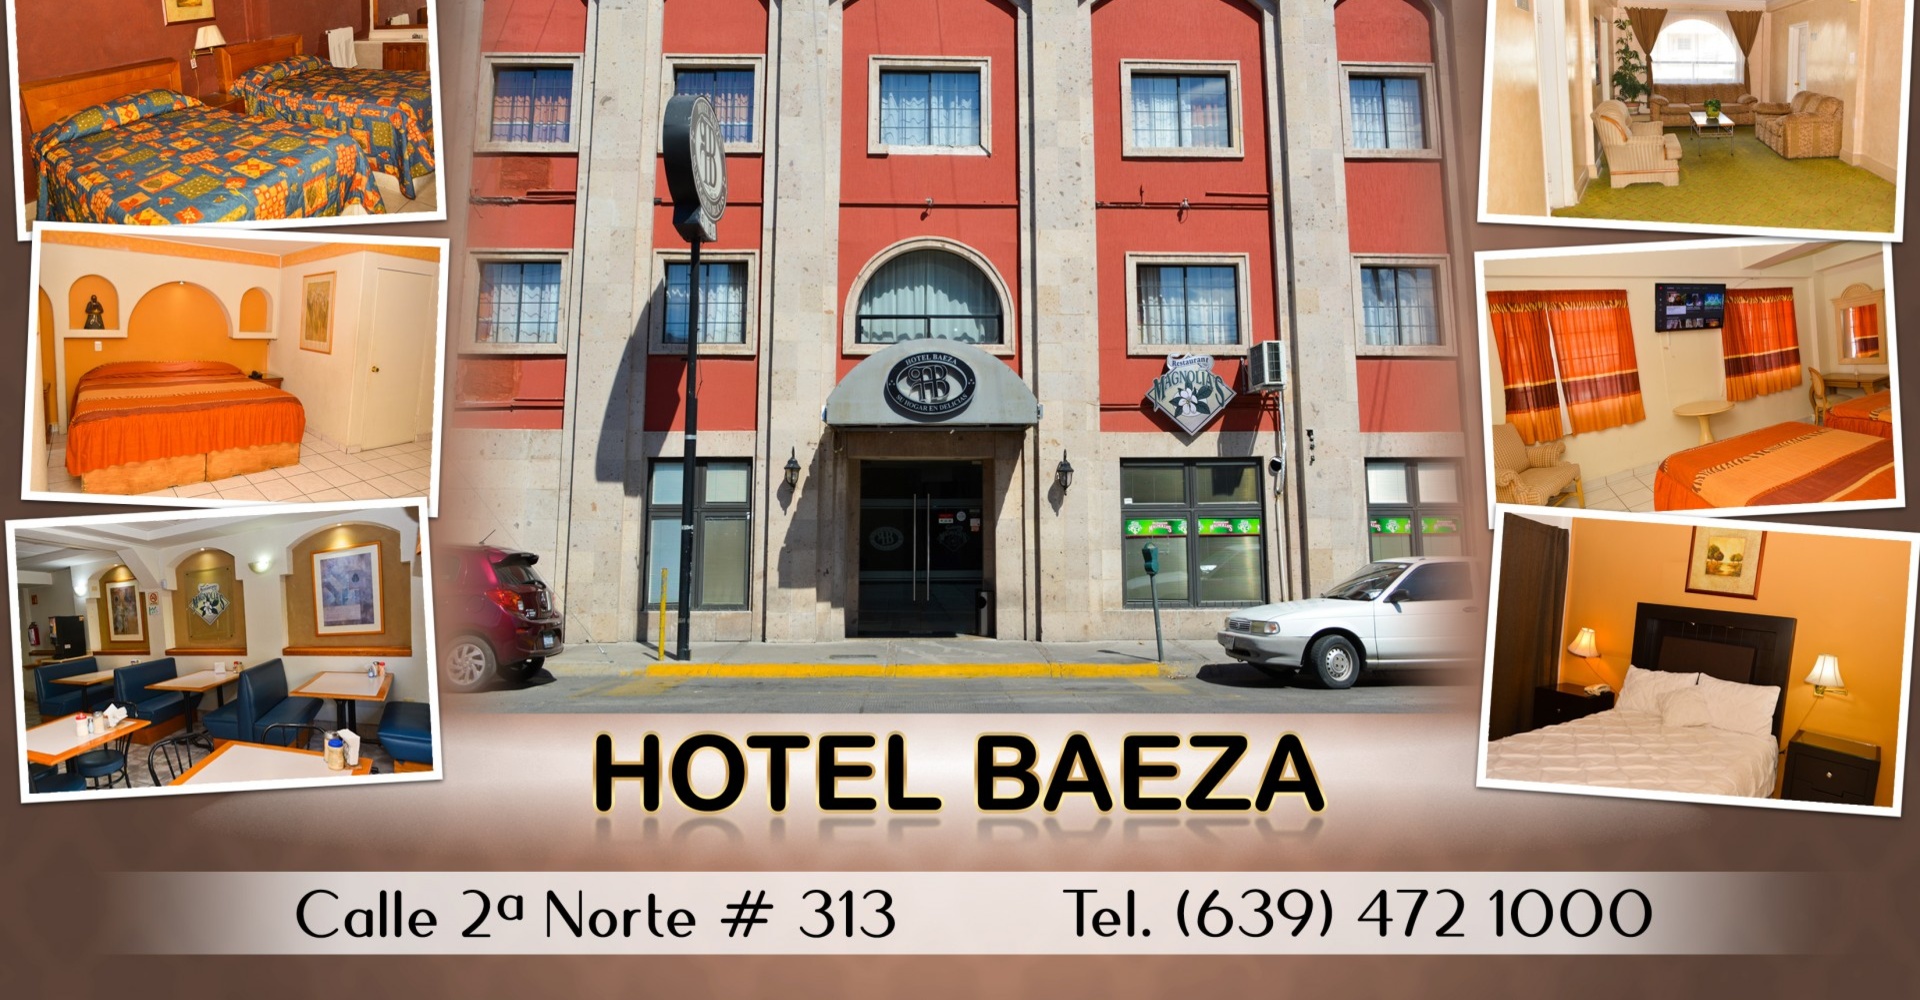 Hotel Baeza